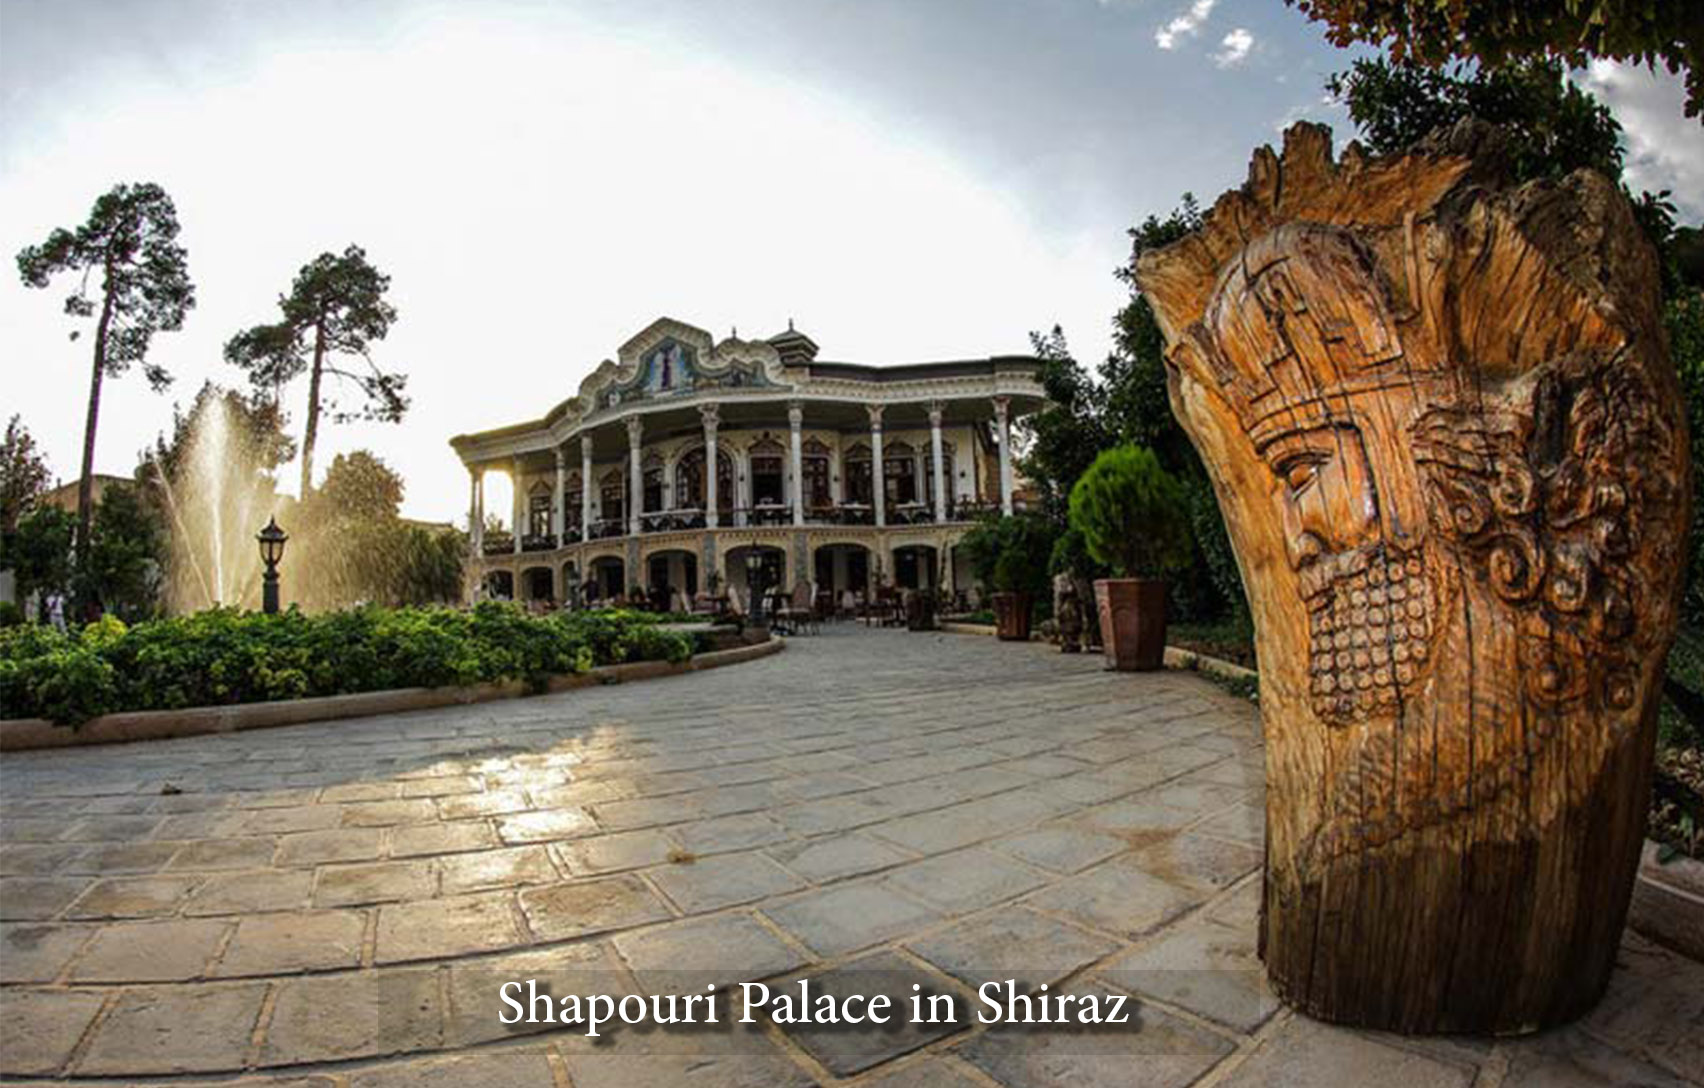 Shapouri Palace in Shiraz